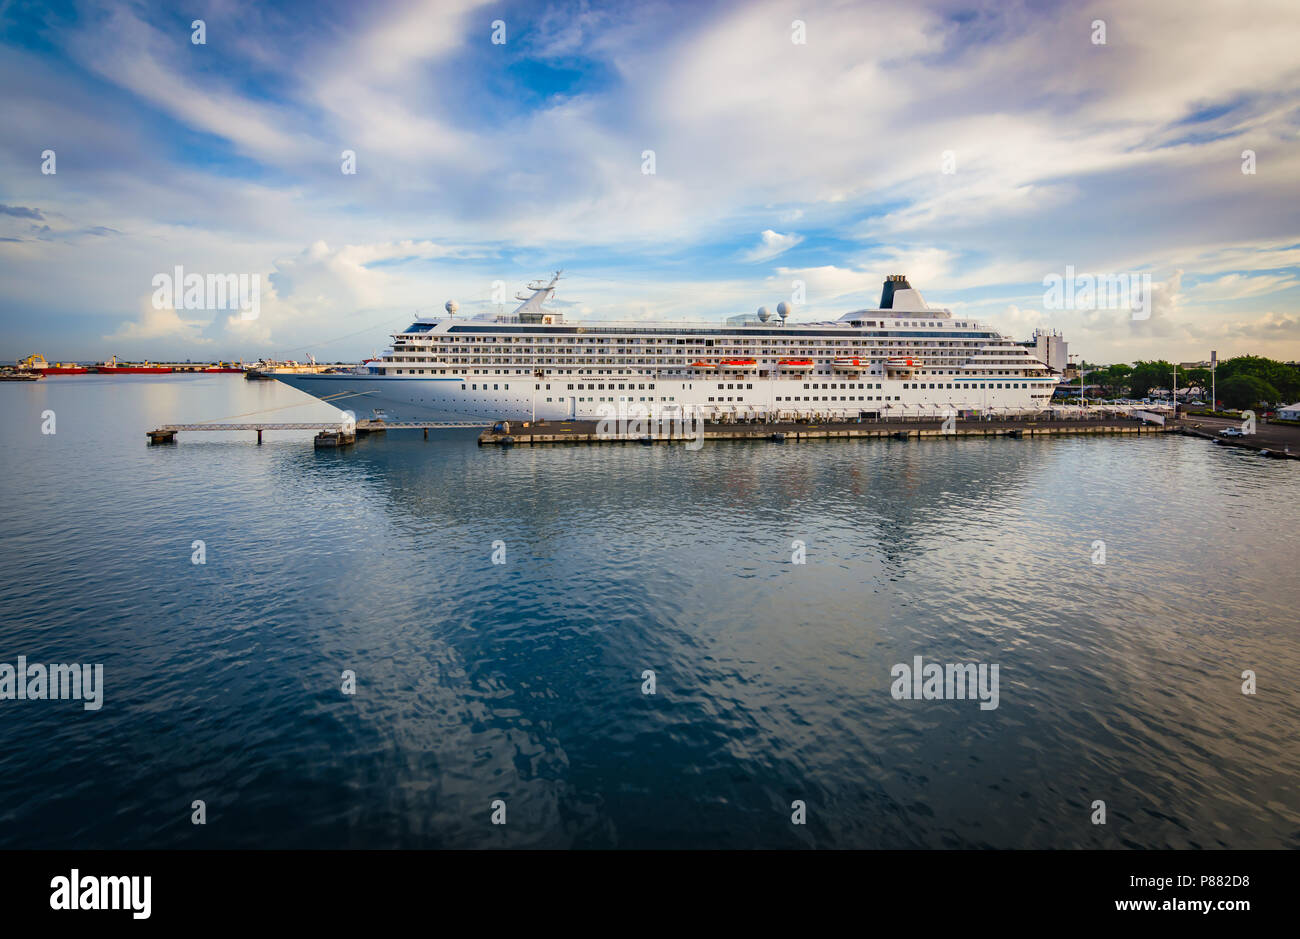 Crucero de lujo atracado en el puerto. Foto de stock